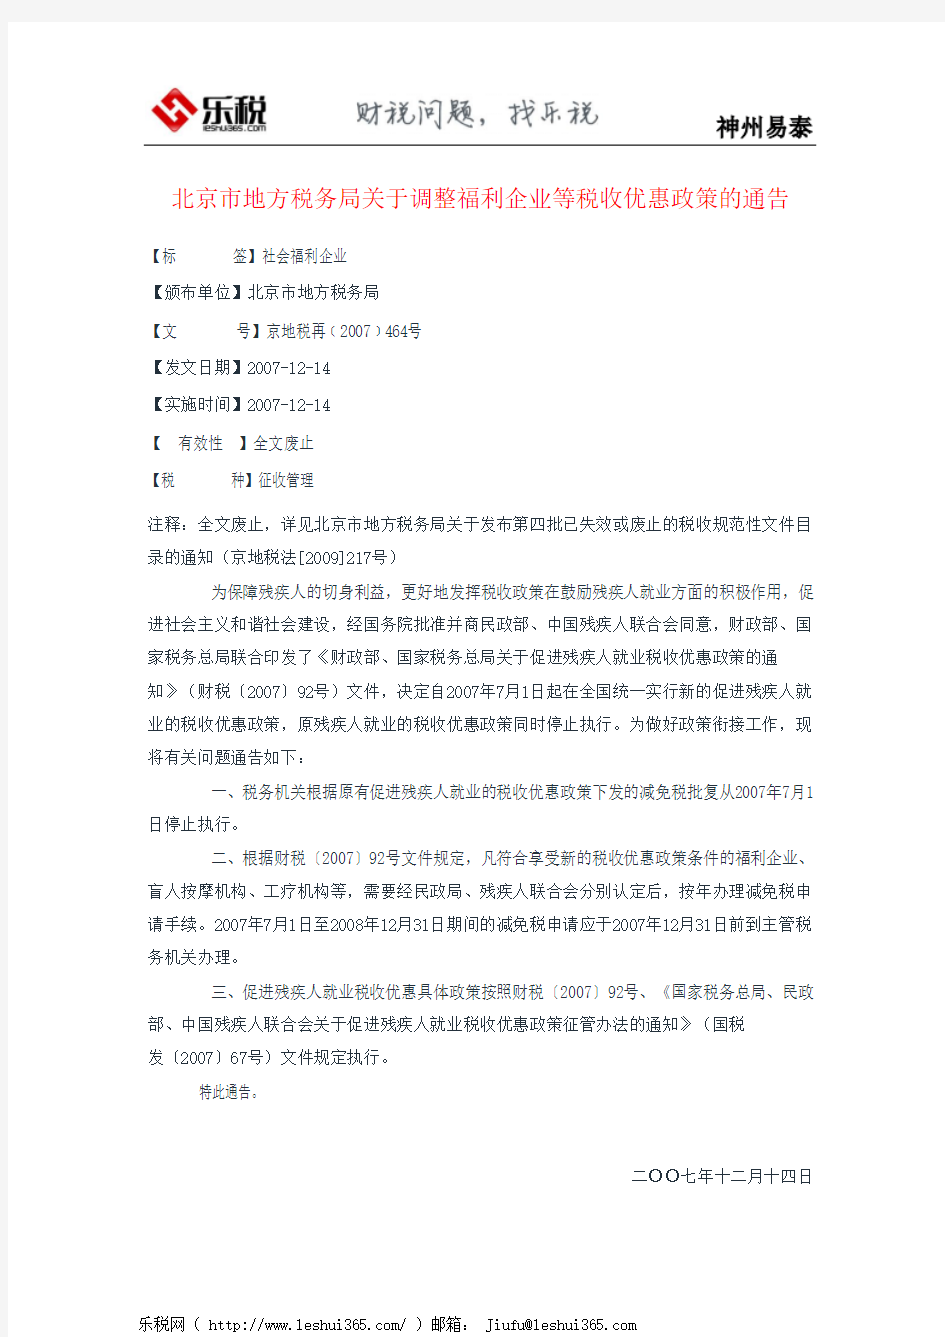 北京市地方税务局关于调整福利企业等税收优惠政策的通告